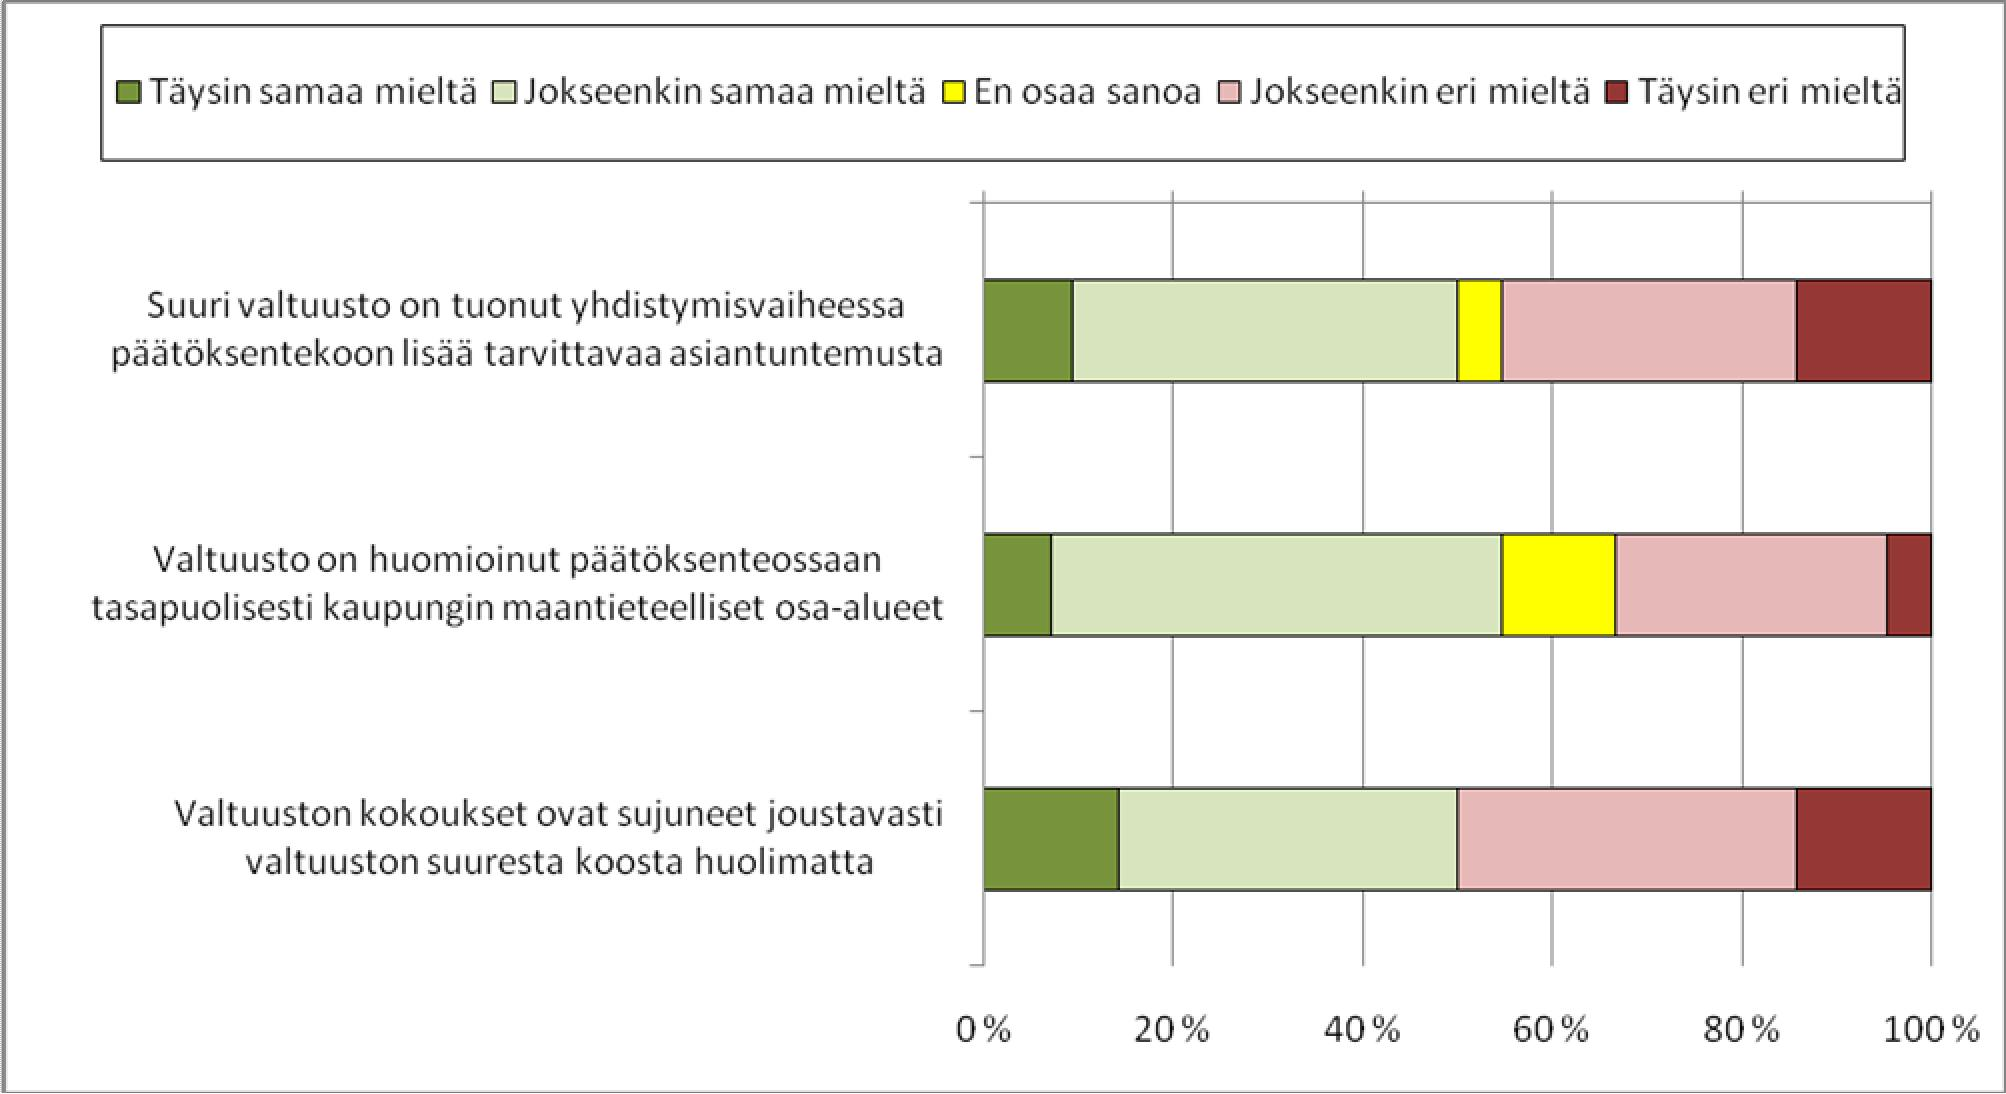 21 4.8 Yhdistymissopimuksen mukaan uuden Rovaniemen kaupungin valtuuston koko on 75 valtuutettua valtuustokausilla 2006 2012. Arvioikaa valtuuston koon merkitystä päätöksentekoon. Taulukko 16.